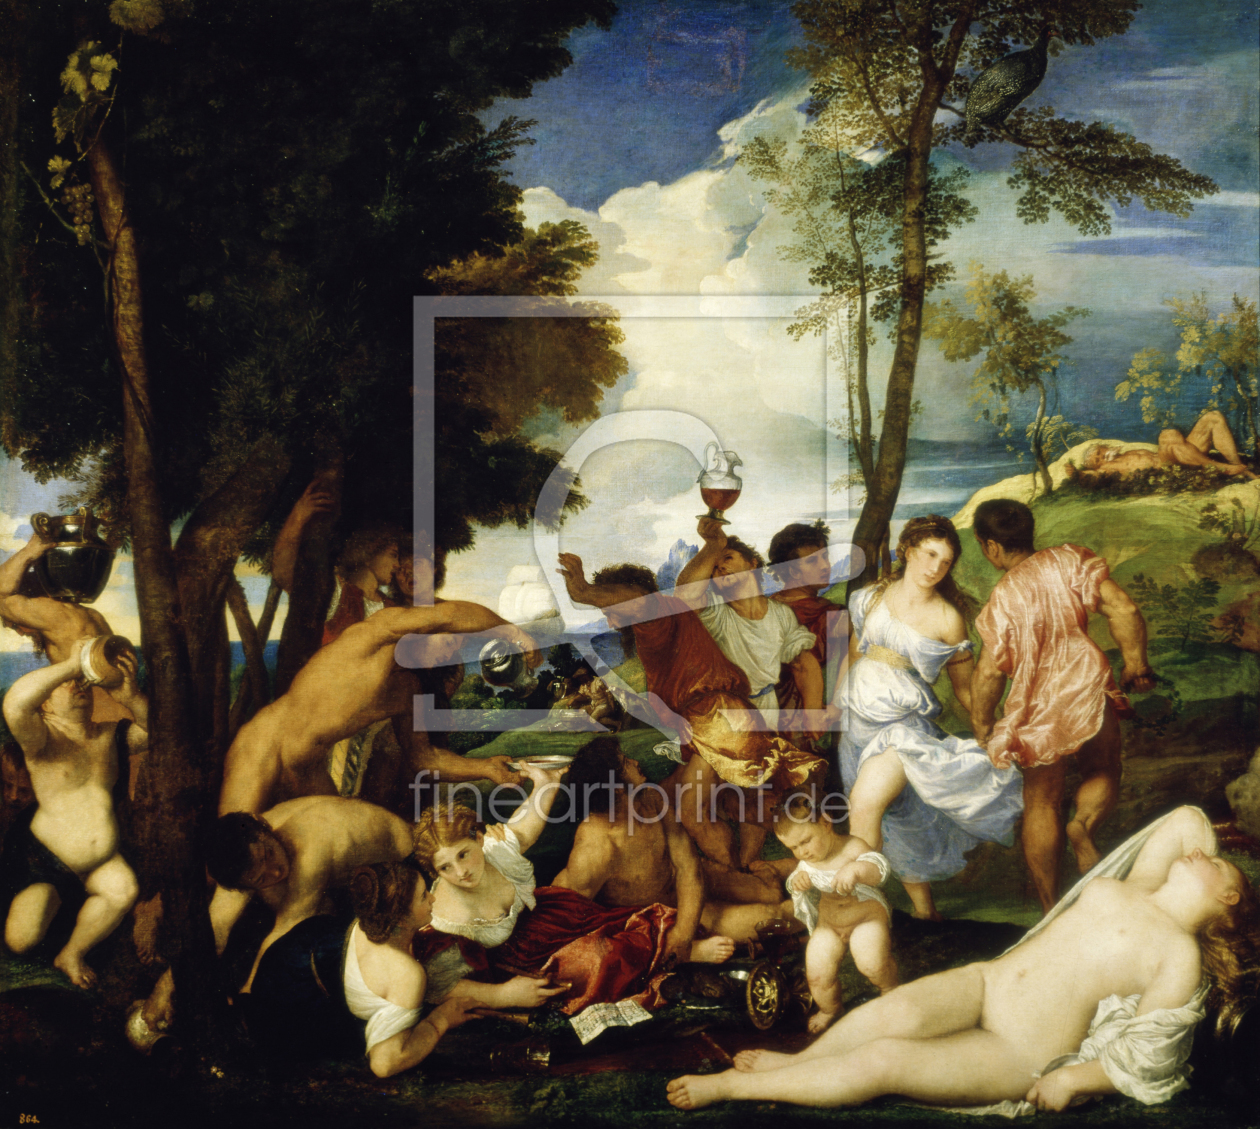 Bild-Nr.: 30007501 Titian / Bacchanalia / Paint. / 1518/19 erstellt von Vecellio, Tiziano